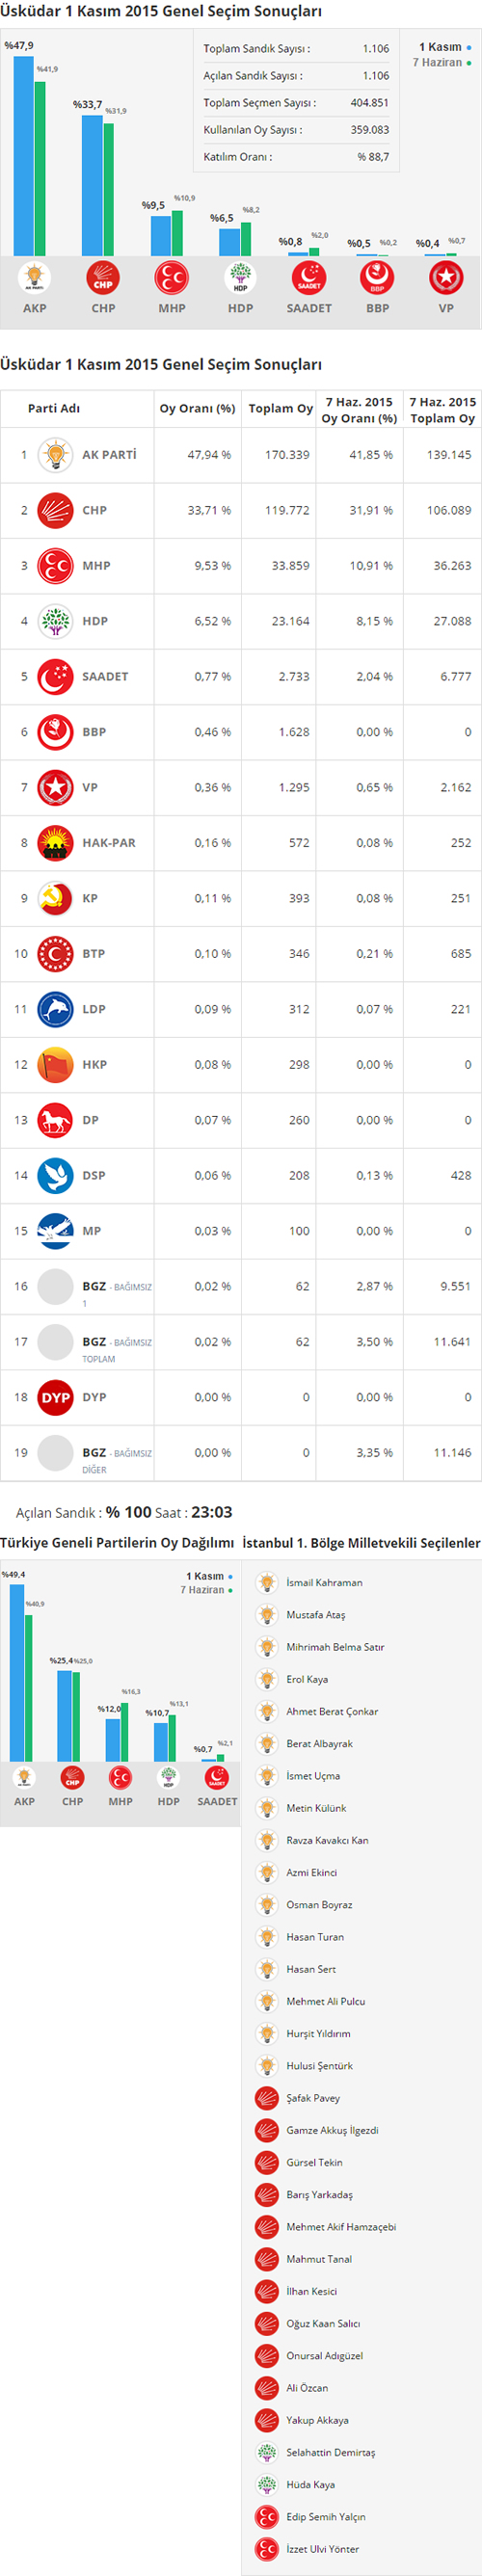 Üsküdar 1 Kasım 2015 Genel Seçim Sonuçları